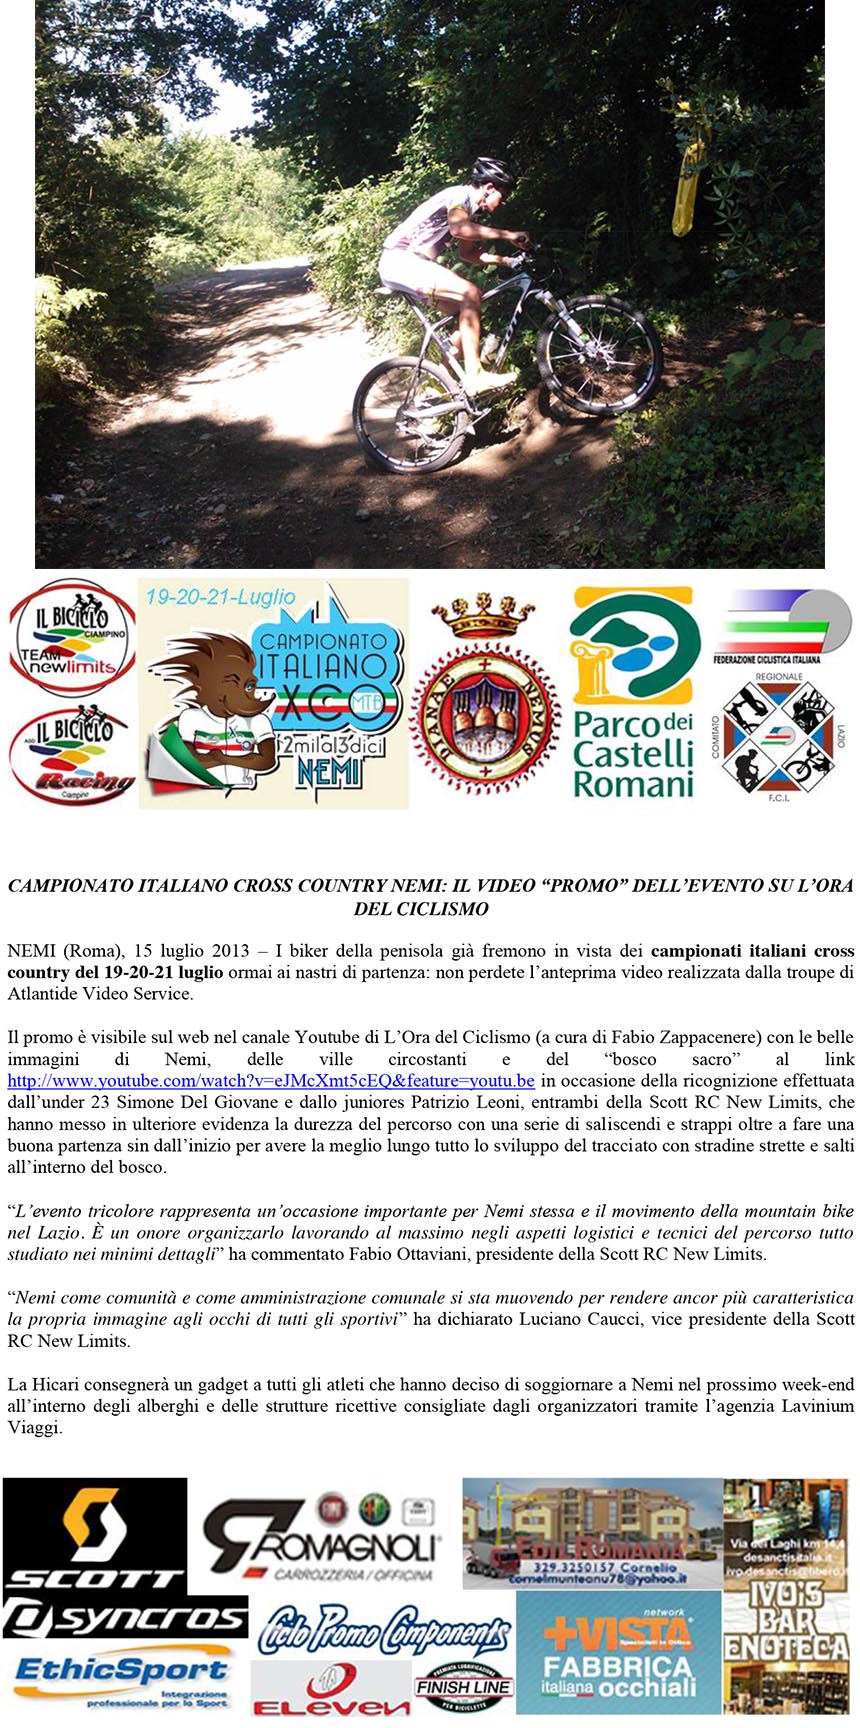  il video promo su Youtube del CAMPIONATO ITALIANO CROSS COUNTRY FCI a Nemi 19-20-21 luglio 2013